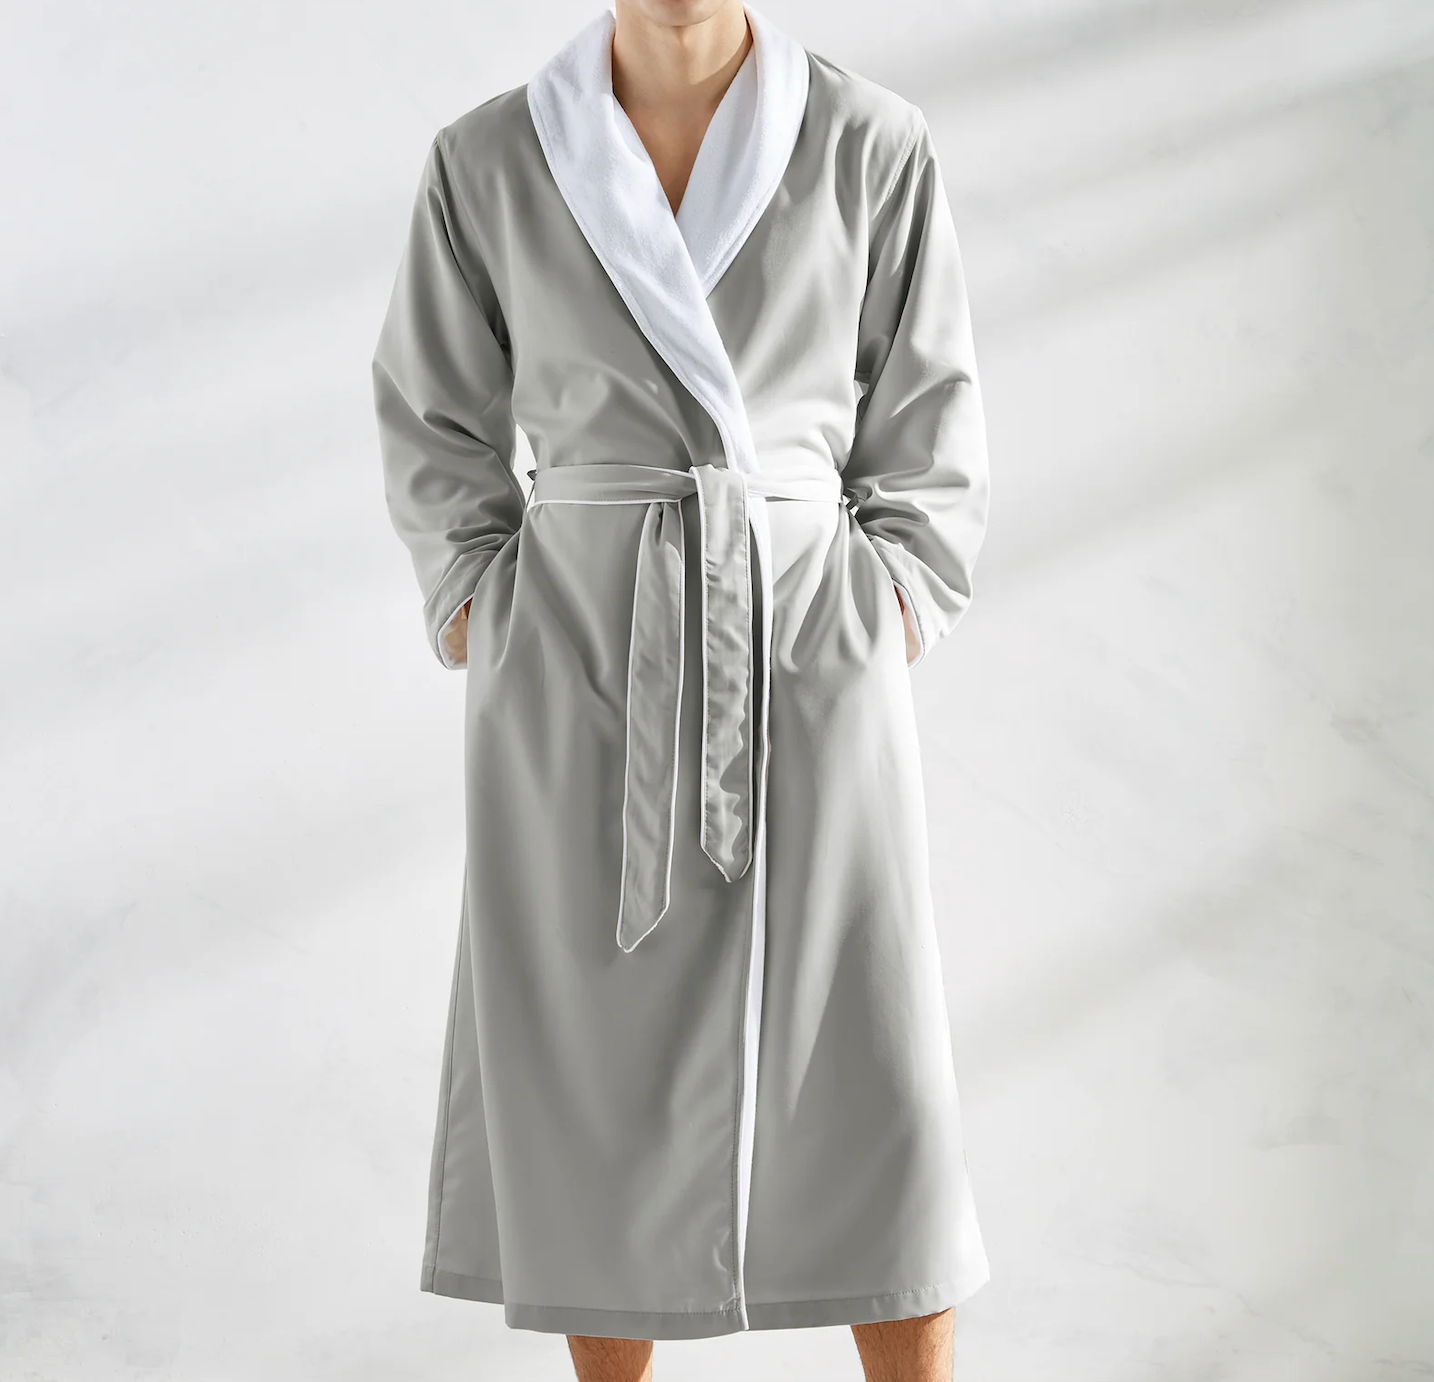 Spa Luxury Cotton Robes by Kassatex